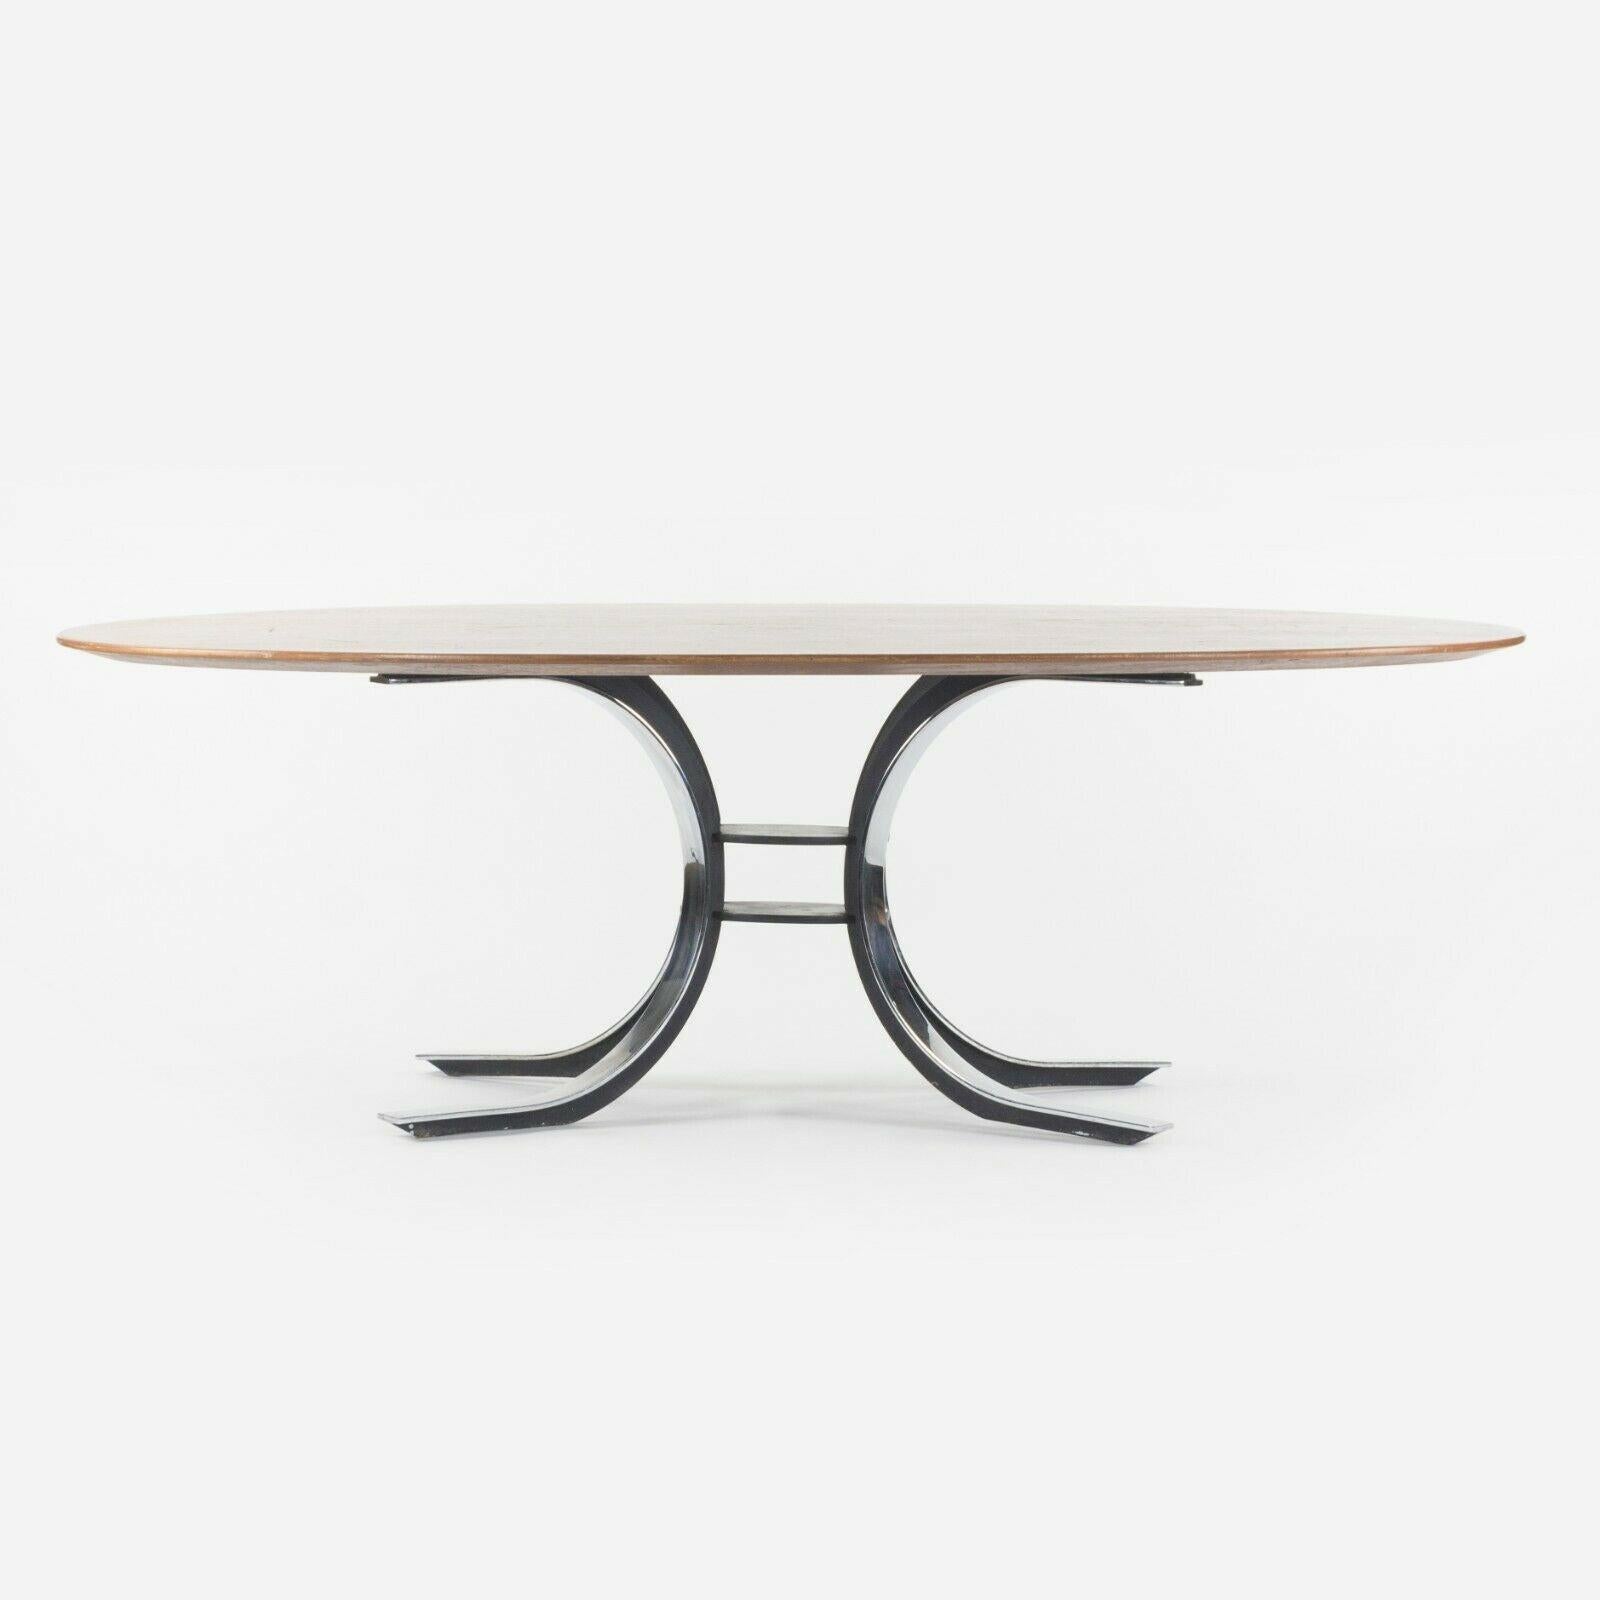 Nous proposons à la vente une table de salle à manger Osvaldo Borsani avec plateau en noyer, produite par Stow Davis vers les années 1970. Il s'agit d'un magnifique exemplaire, qui semble avoir conservé sa finition en bois d'origine. Le top présente